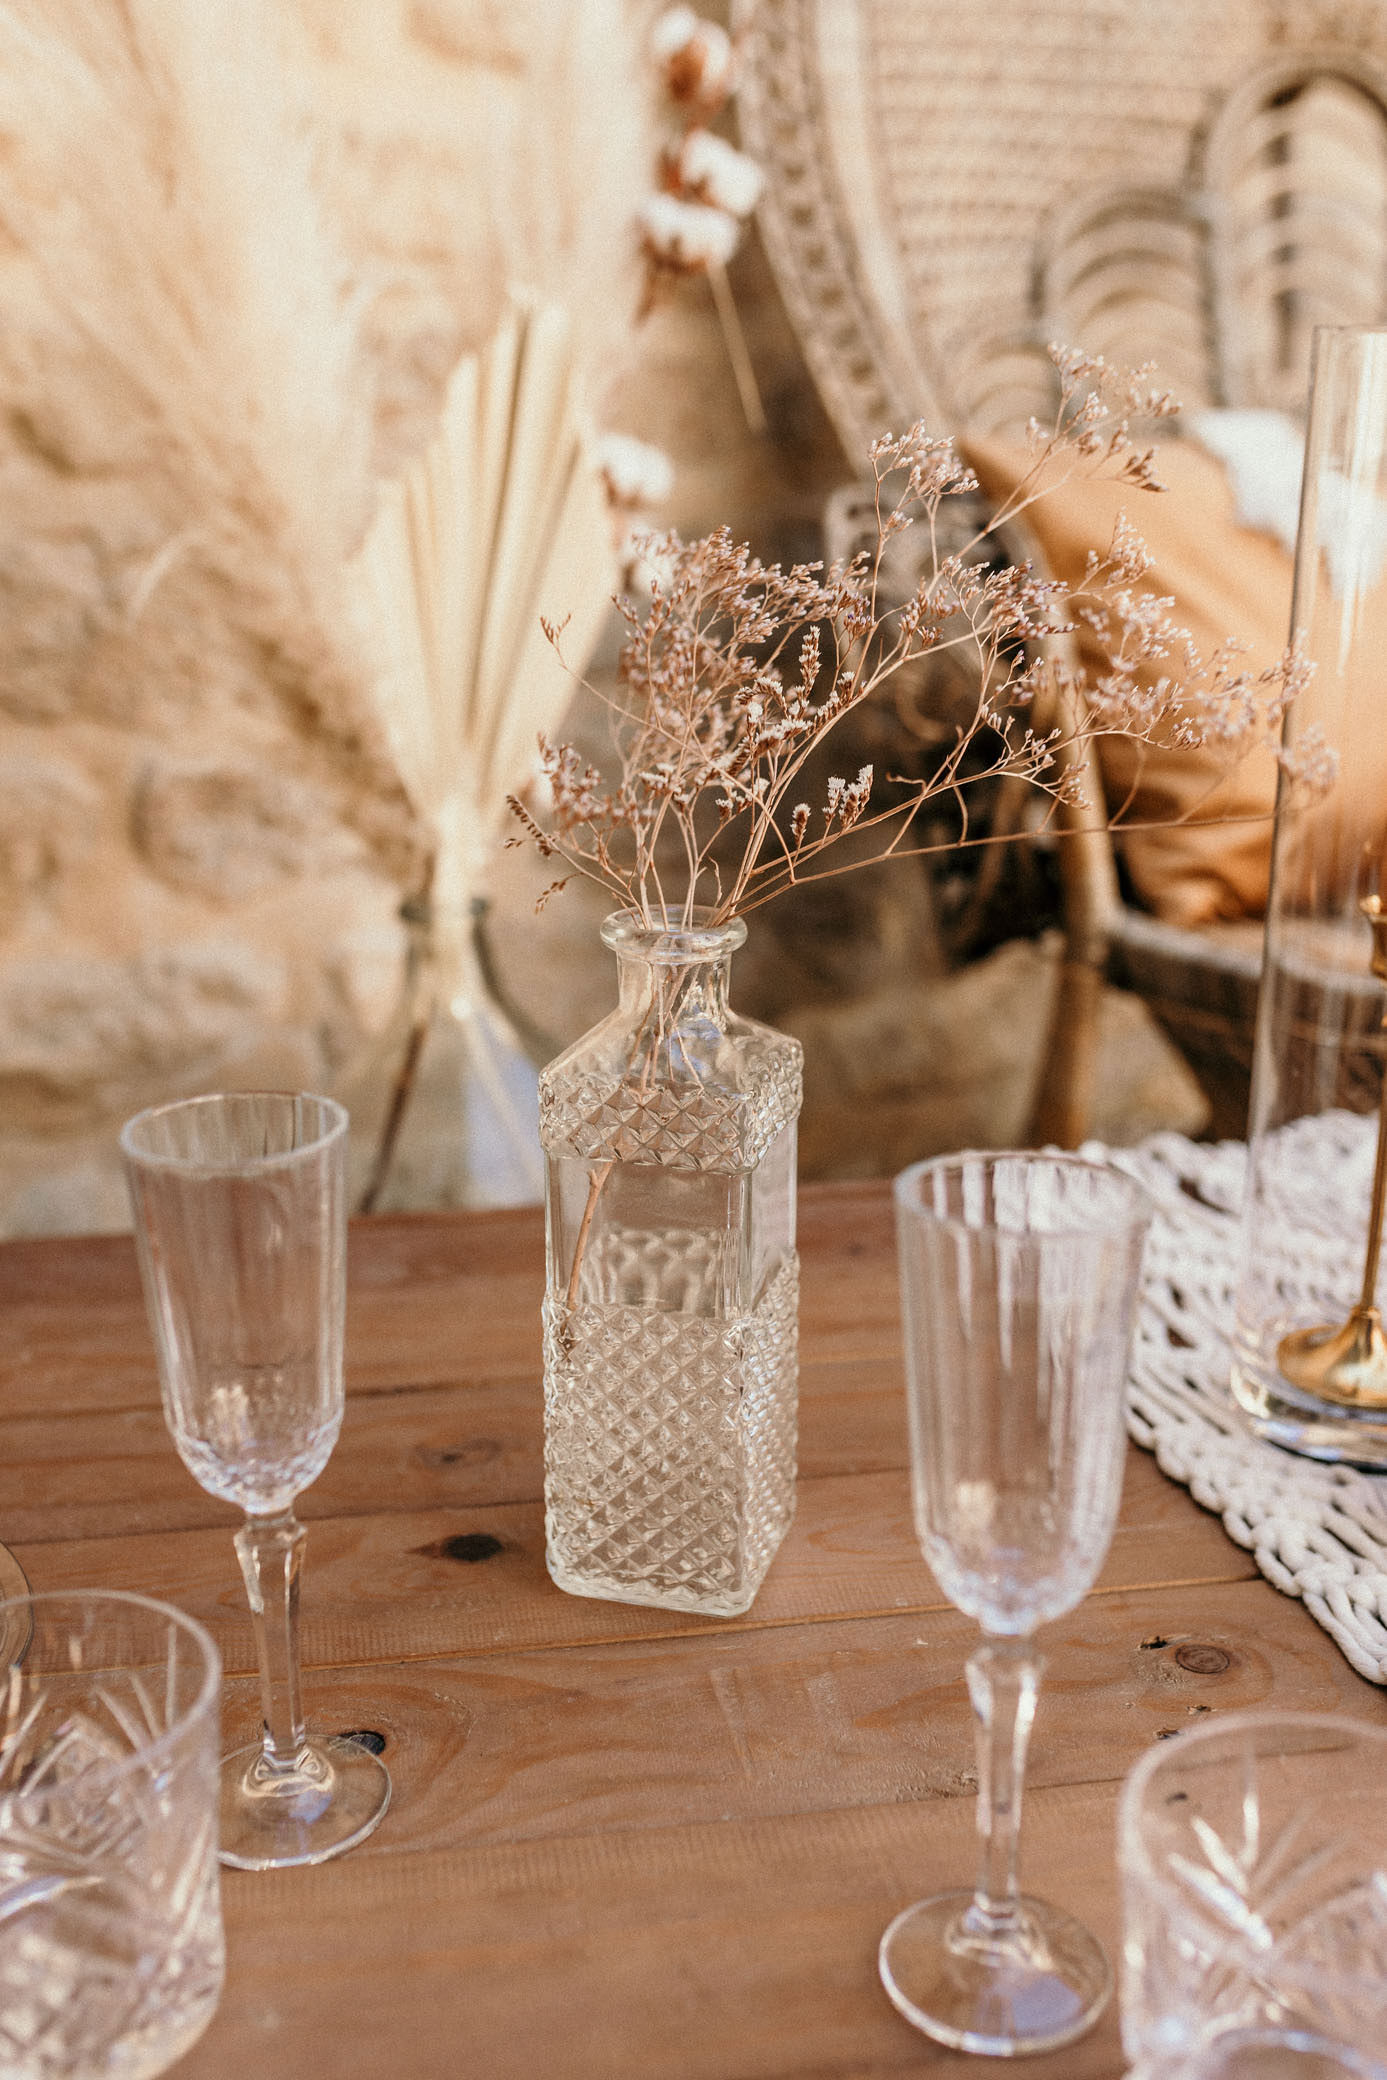 verres cristal, mariage, décoration mariage bohème, inspiration mariage bohème, table basse bois